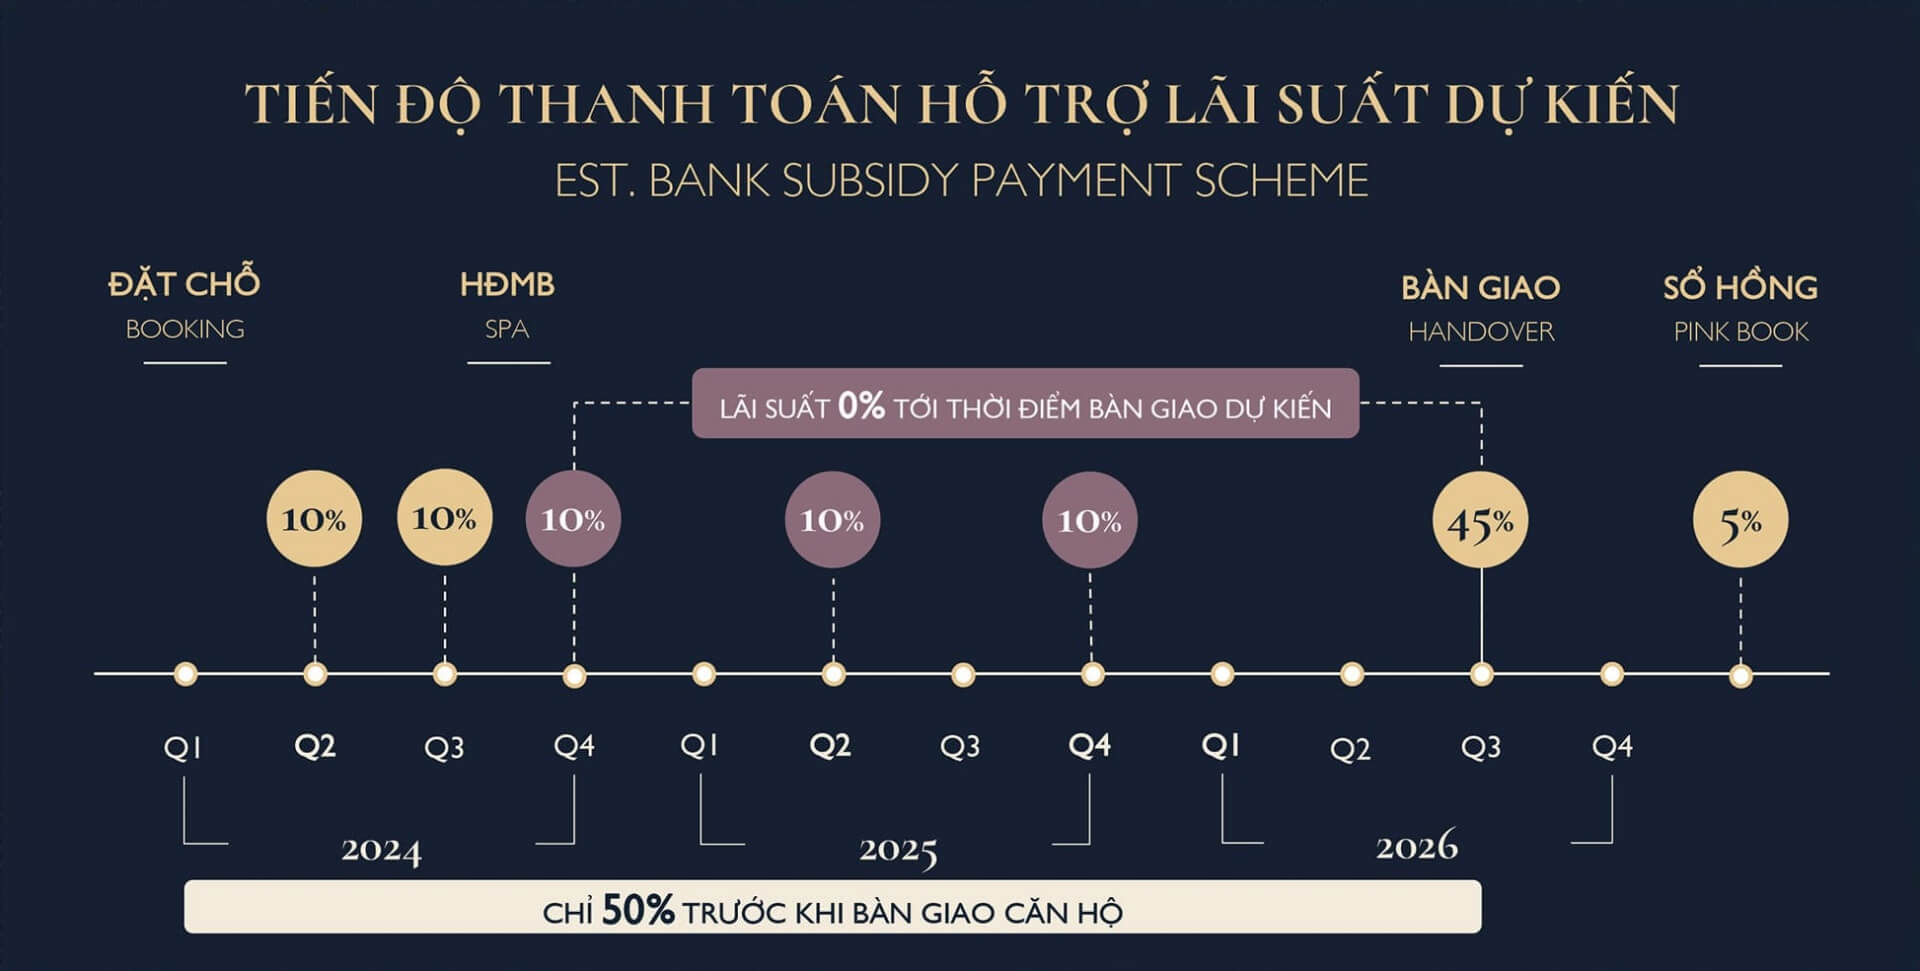 Tiến độ thanh toán hỗ trợ lãi suất Lumi Hanoi